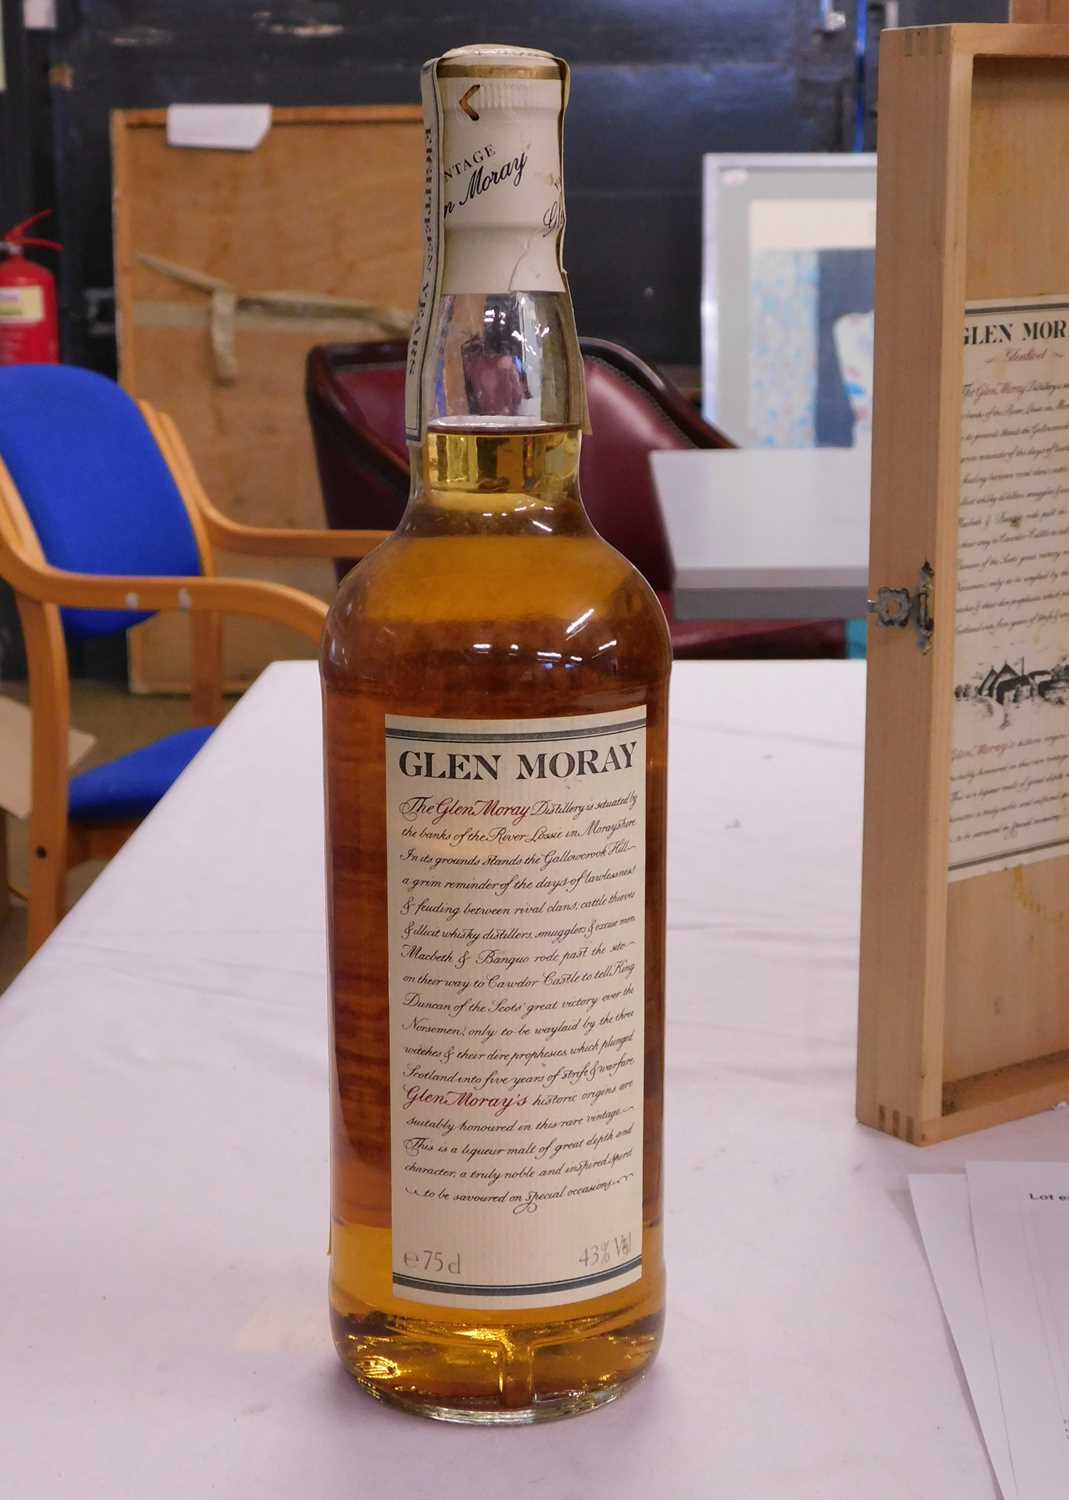 Glen Moray Glenlivet Vintage 1973 Aingle Highland Malt Whisky, 75cl, in original wooden presentation - Image 6 of 10